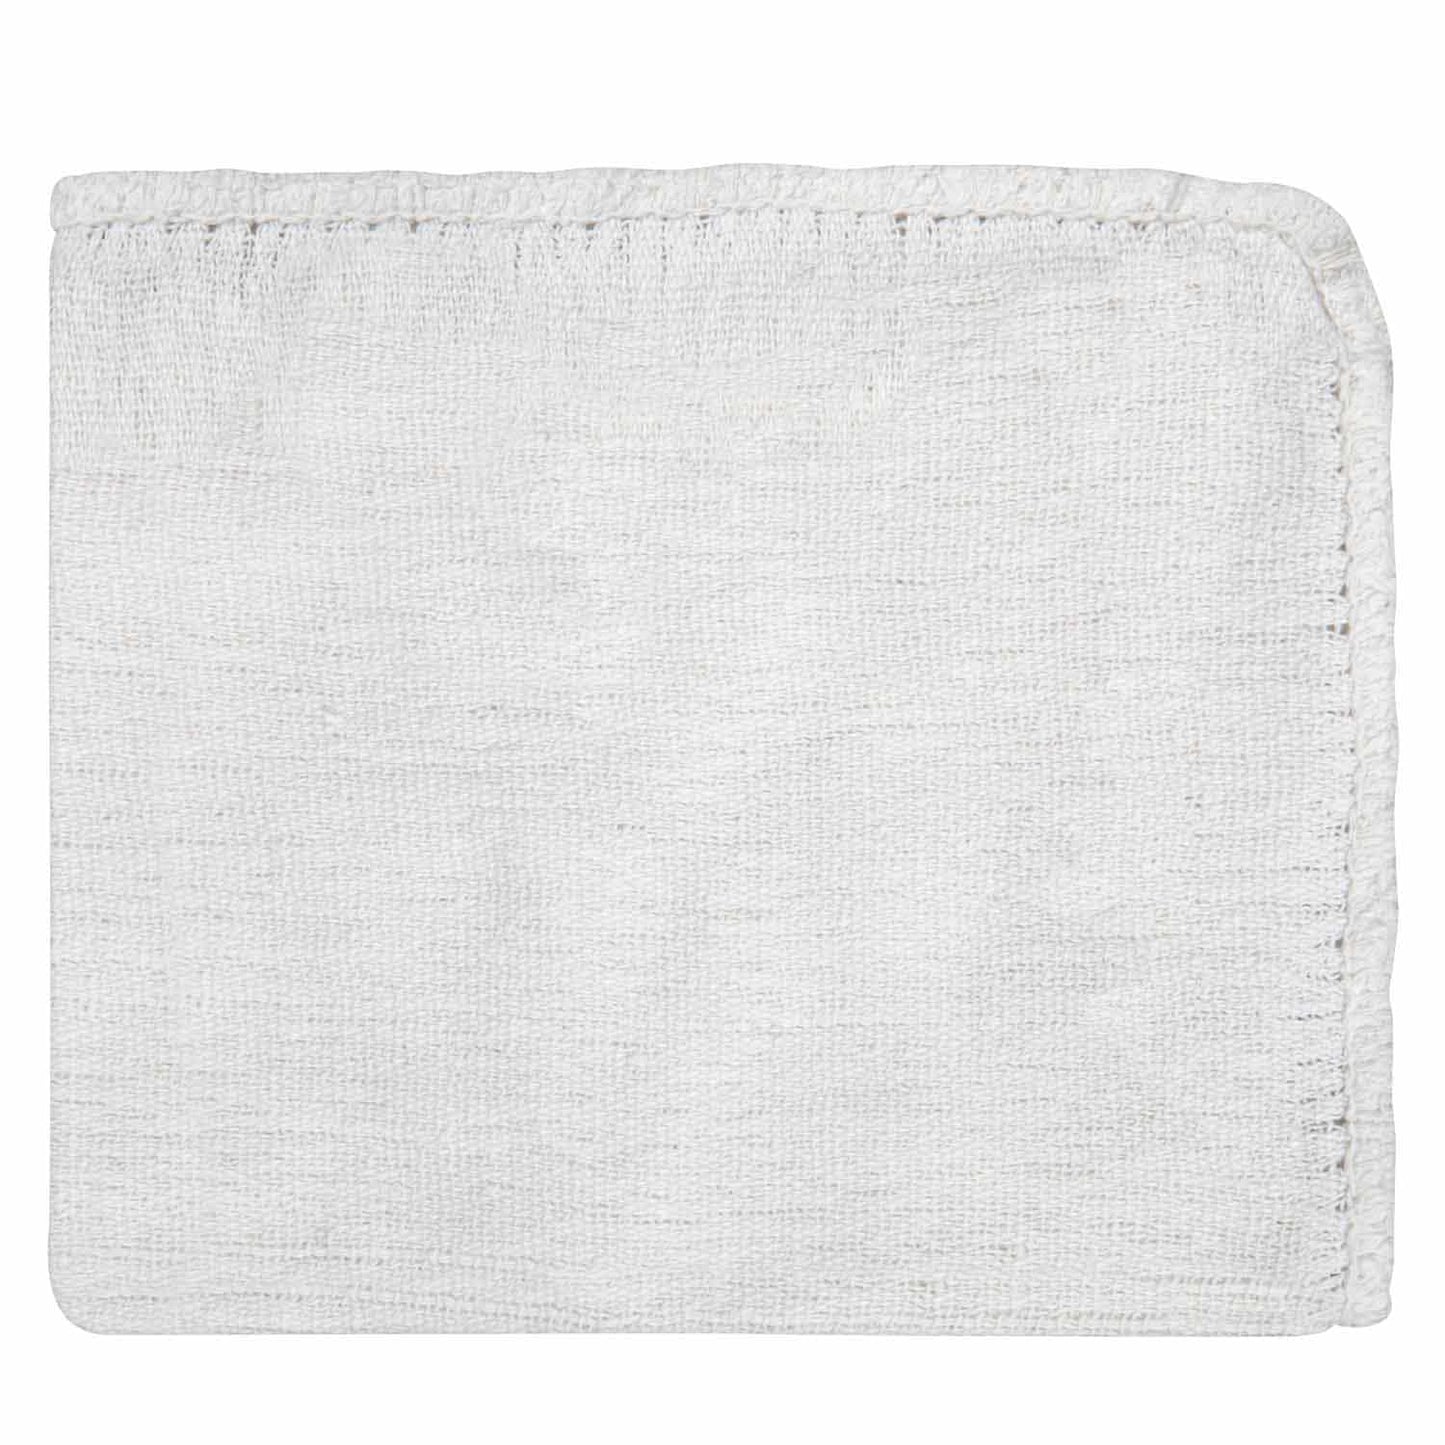 American Dawn | 14X14 Inch Cintas White Shop Towel 